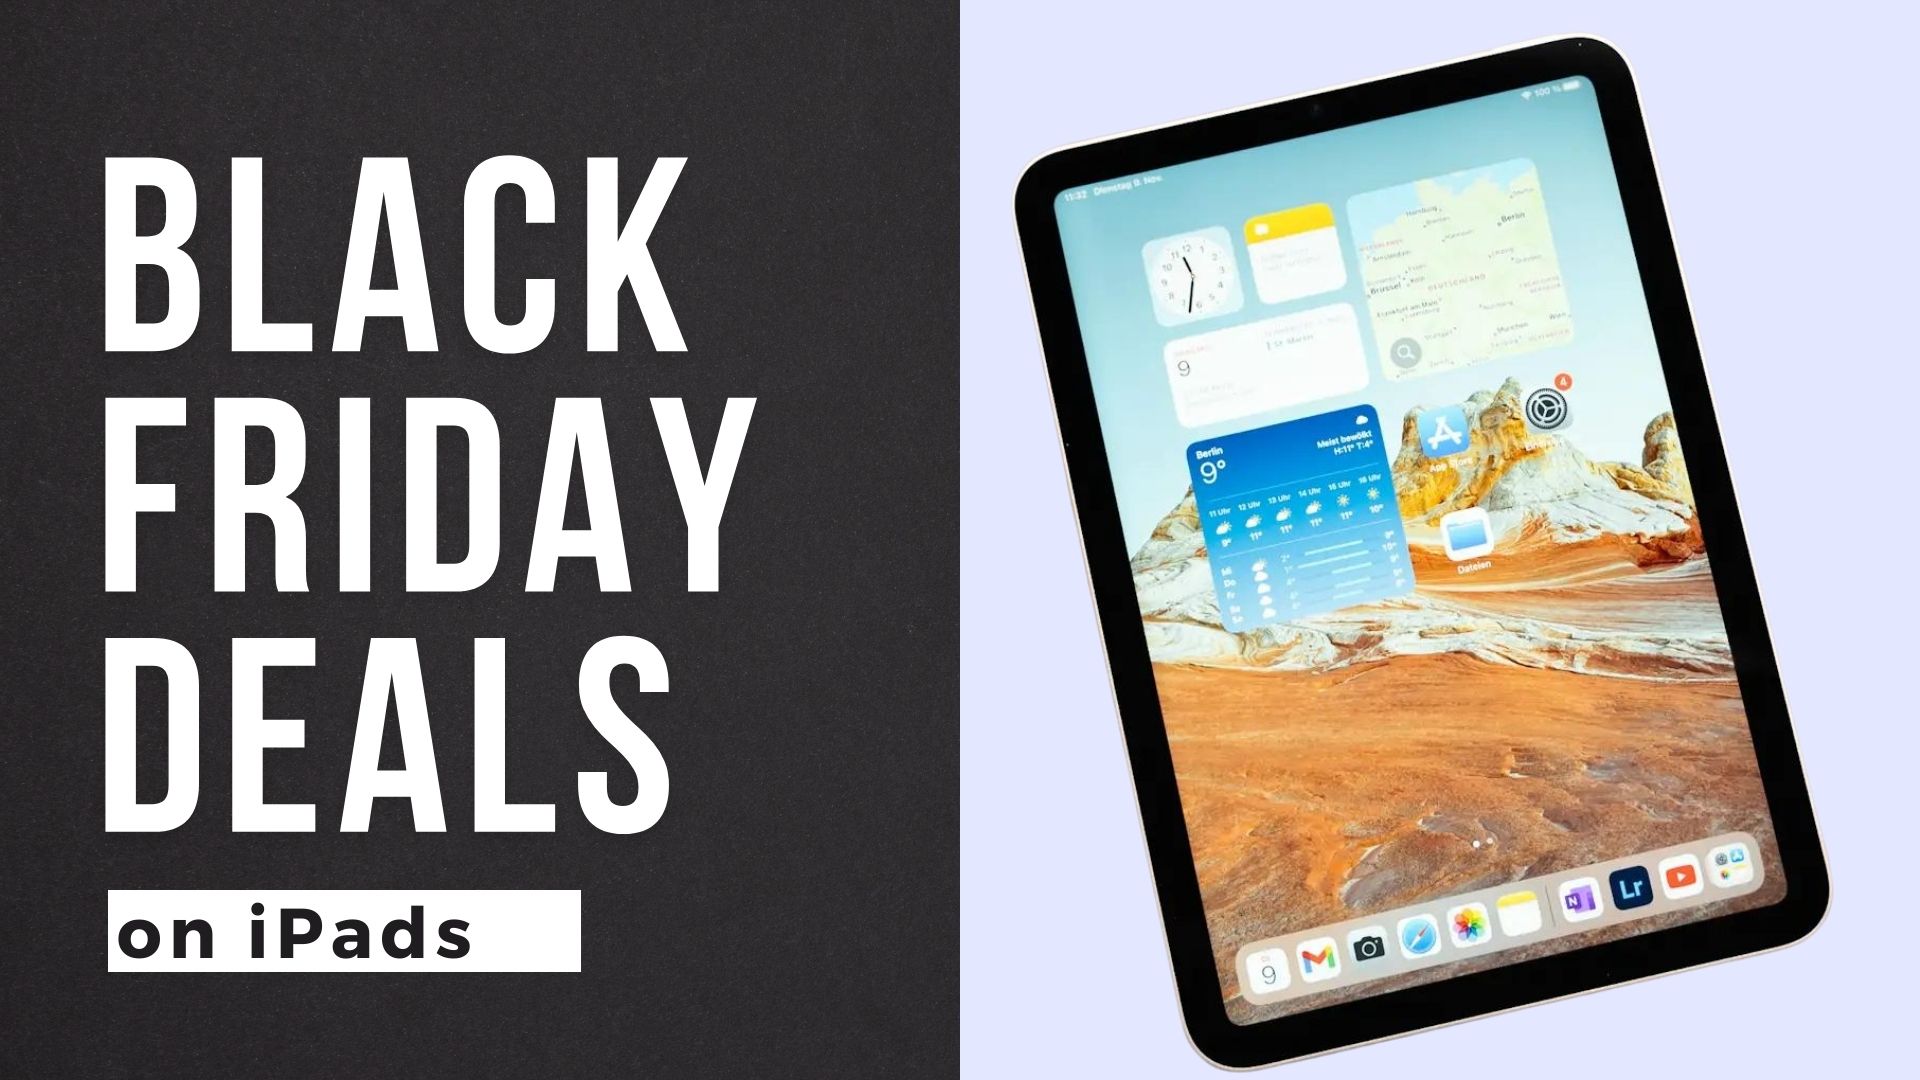 Black friday iPad deals